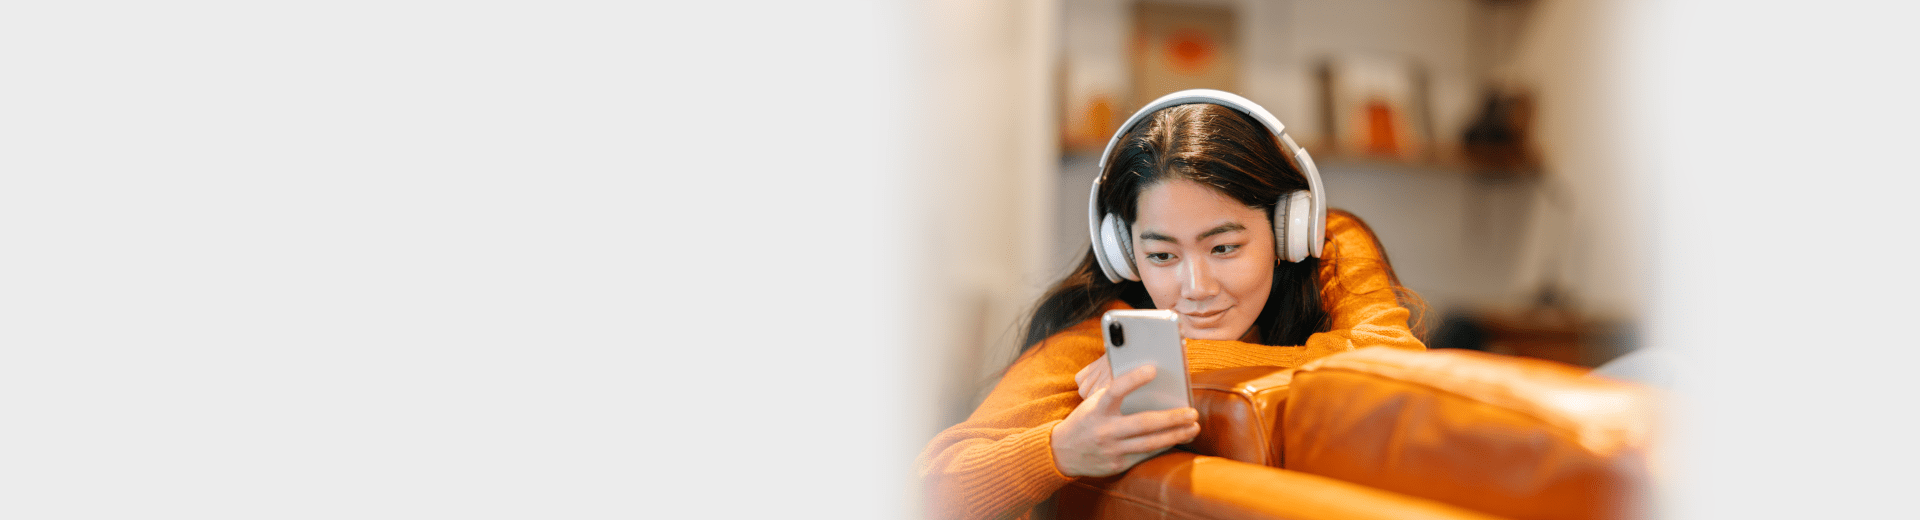 Junge Frau hört Musik mit ihrem Handy